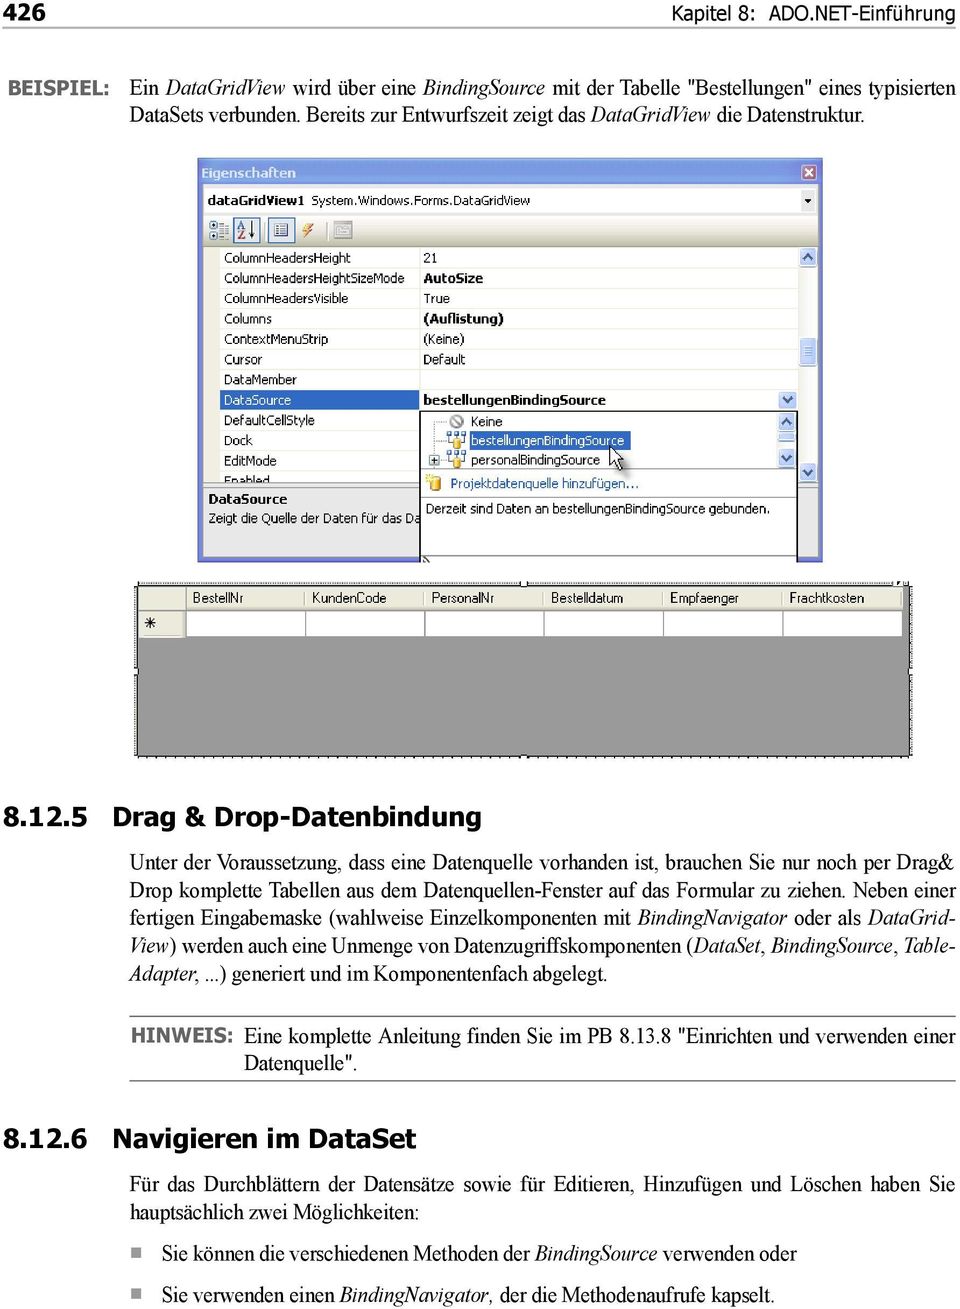 5 Drag & Drop-Datenbindung Unter der Voraussetzung, dass eine Datenquelle vorhanden ist, brauchen Sie nur noch per Drag& Drop komplette Tabellen aus dem Datenquellen-Fenster auf das Formular zu